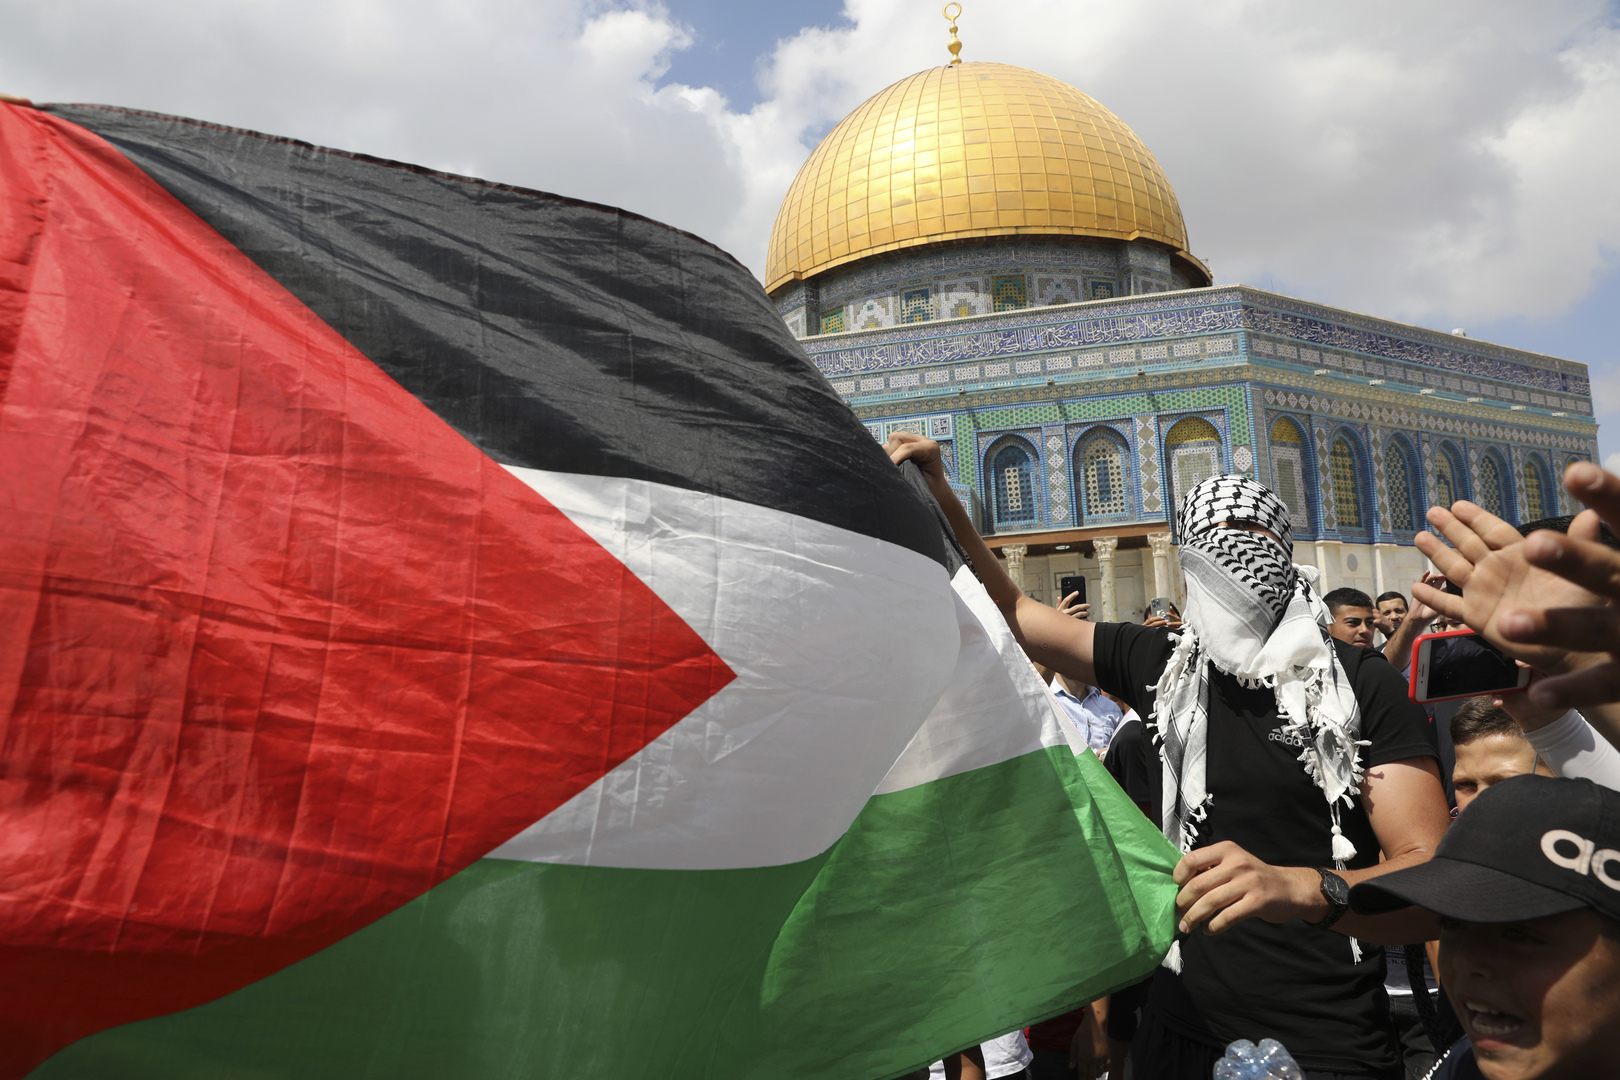 مكتب بينيت: إسرائيل ستتخذ كافة القرارات المتعلقة بالمسجد الأقصى دون الاهتمام بضغوط أجنبية أو سياسية